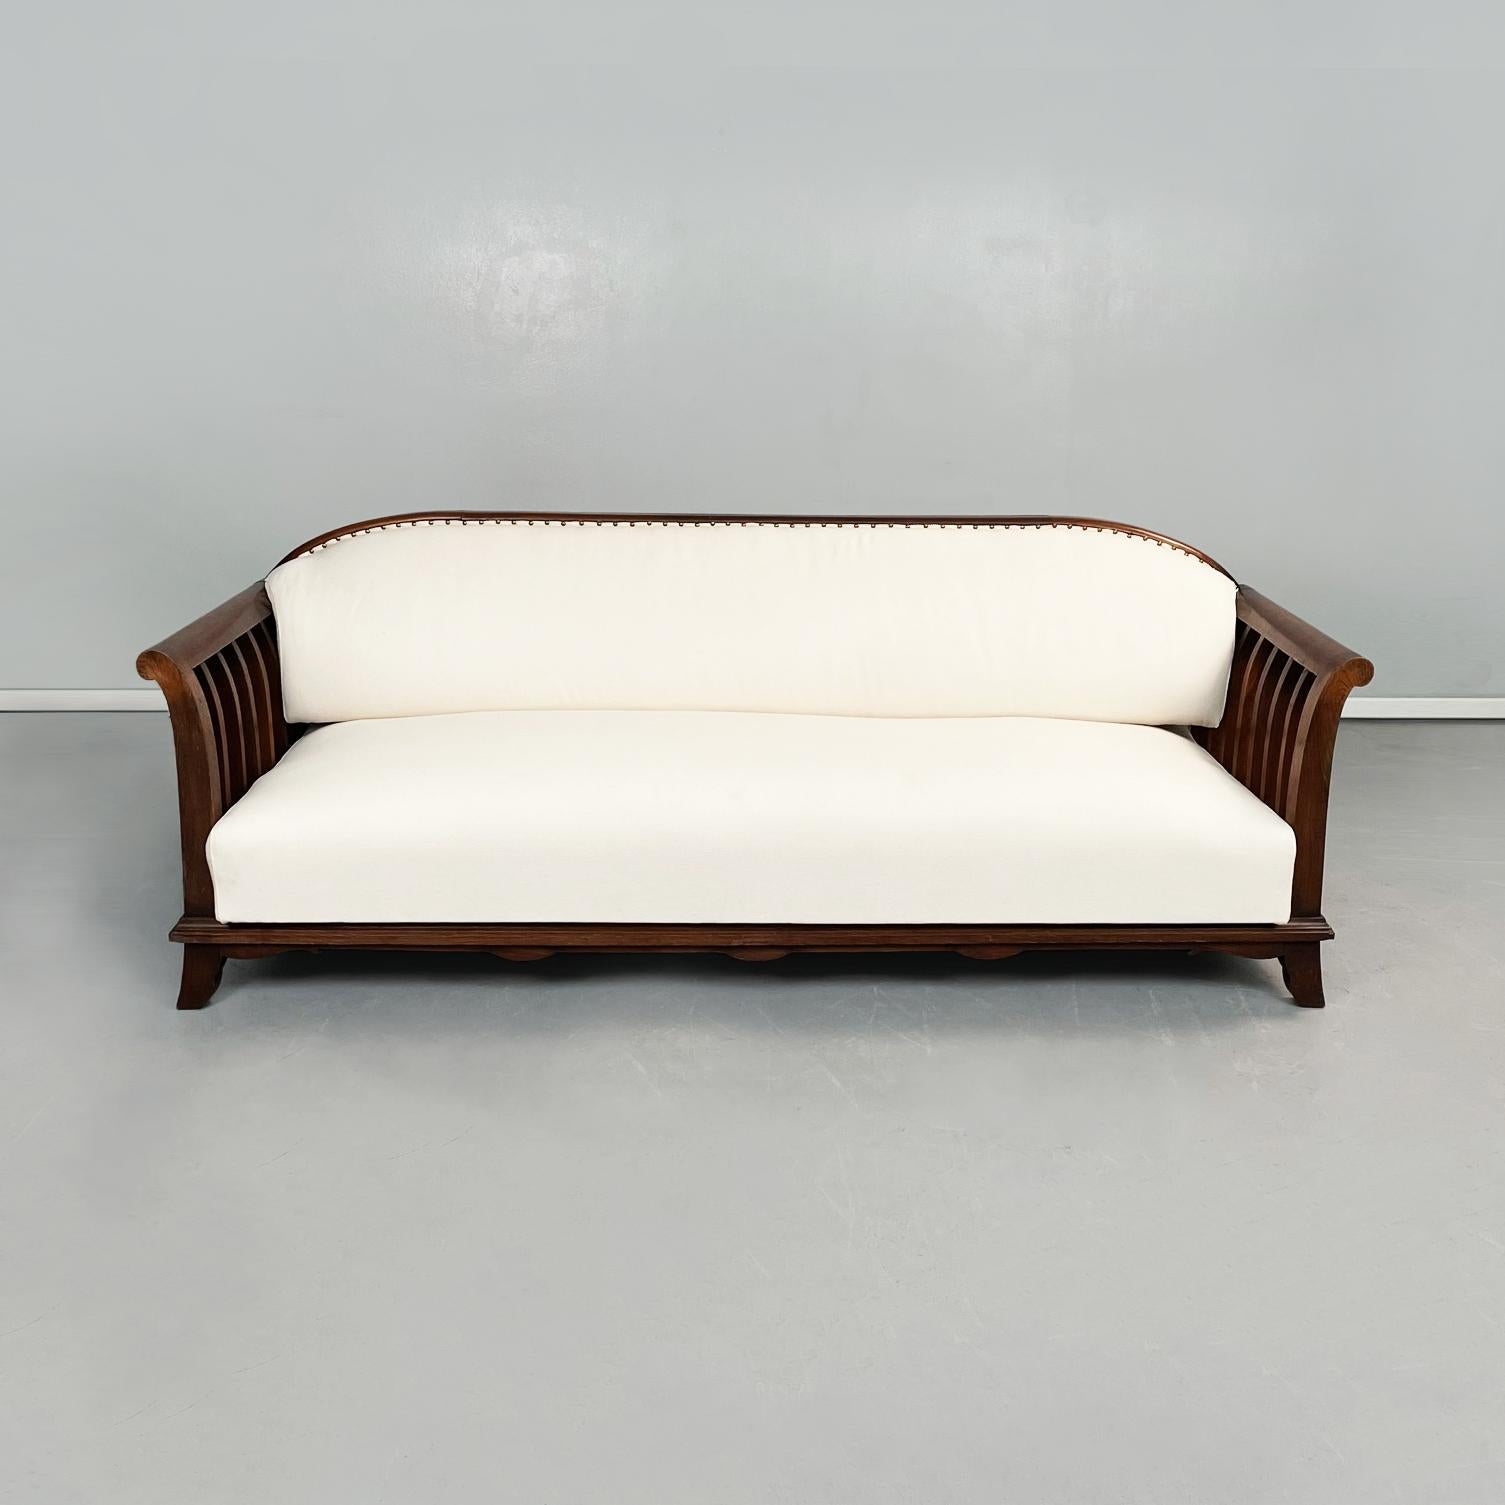 Italienisches modernes Holzsofa mit weißem Stoff, 1940er Jahre
Ein Sofa mit Holzstruktur. Das Sofa hat eine rechteckige Sitzfläche und eine rechteckige Rückenlehne mit abgerundeten oberen Ecken. Beide sind gepolstert und mit weißem Stoff gepolstert.